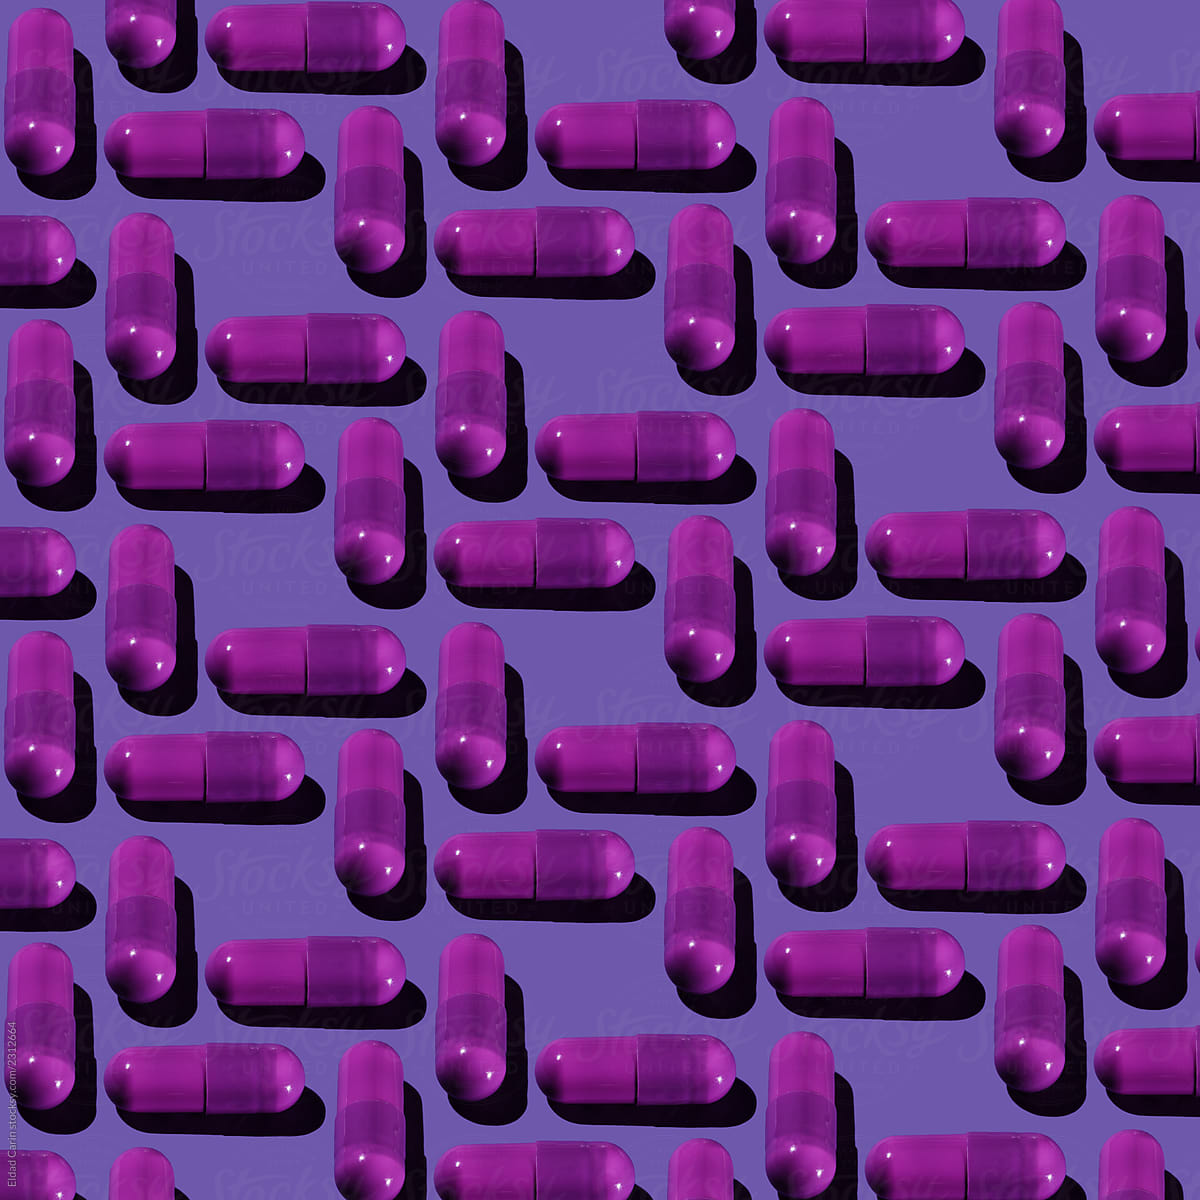 Purple Pharma Pill Pattern on Purple